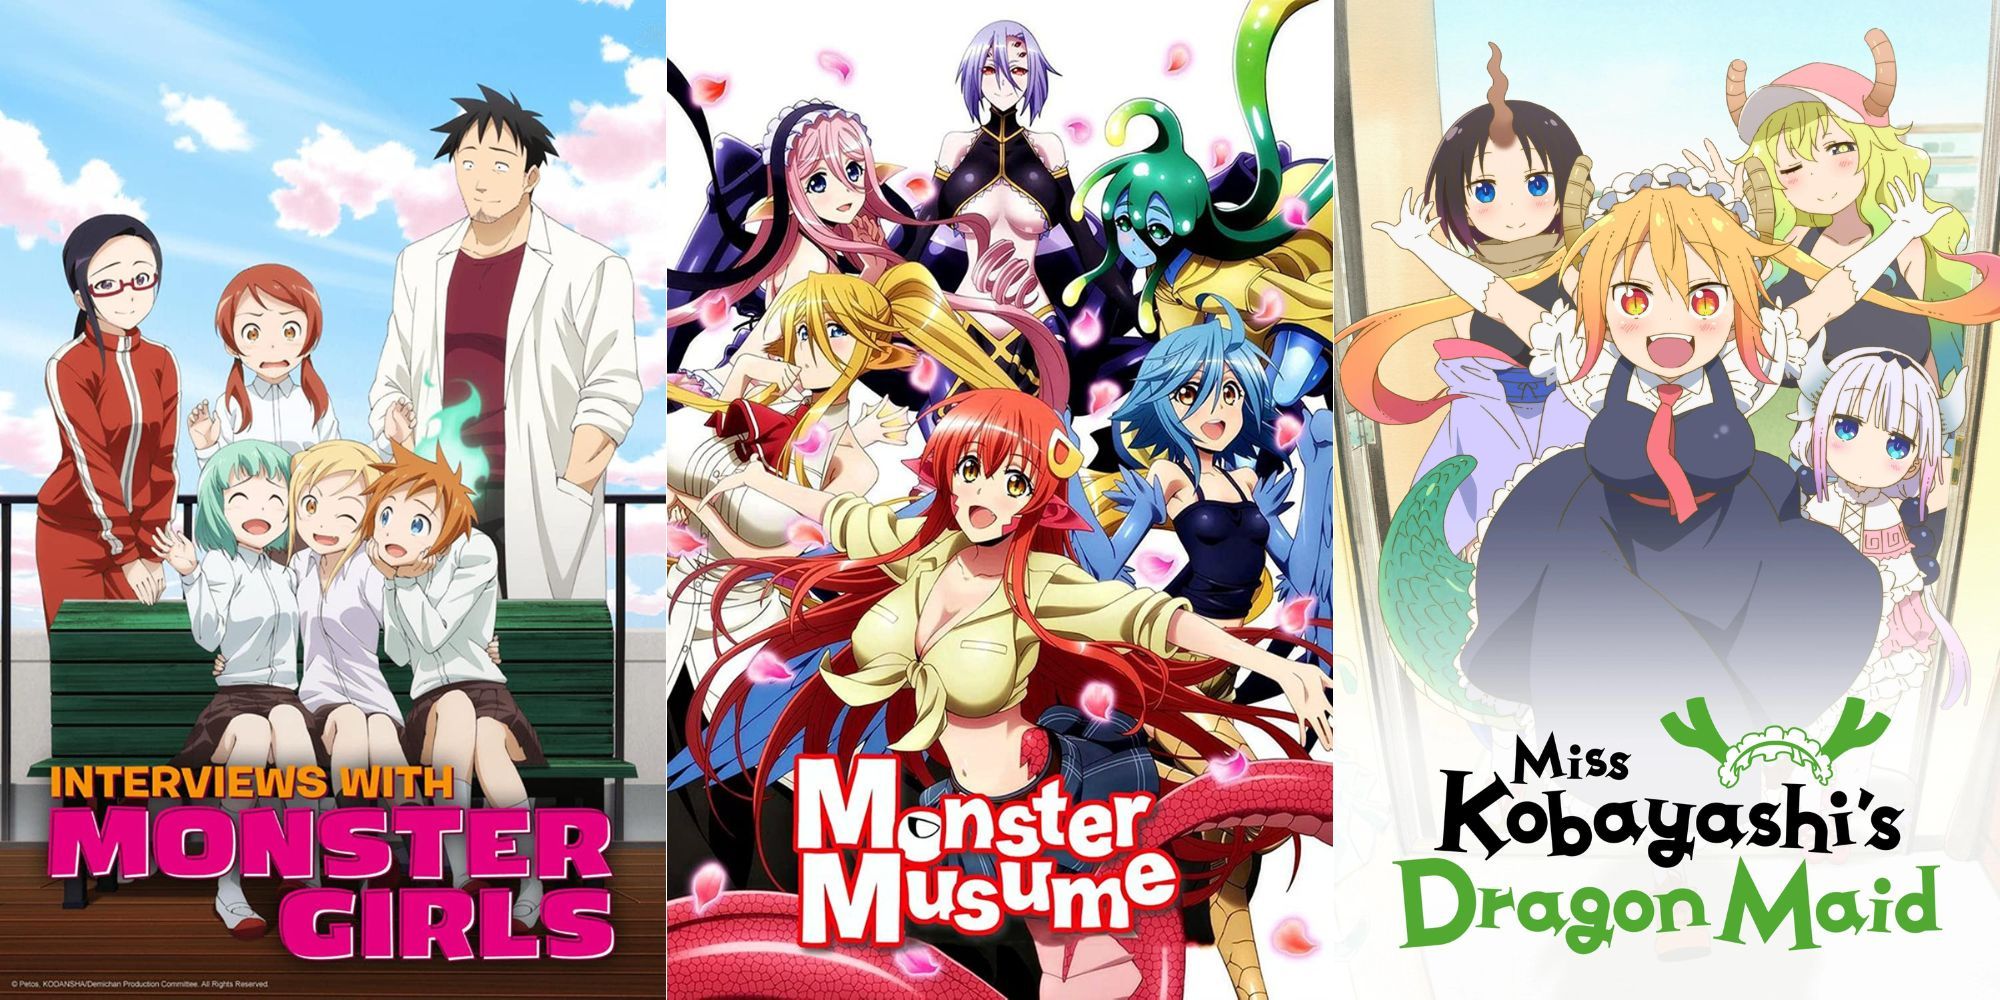 Best of Monster high school anime